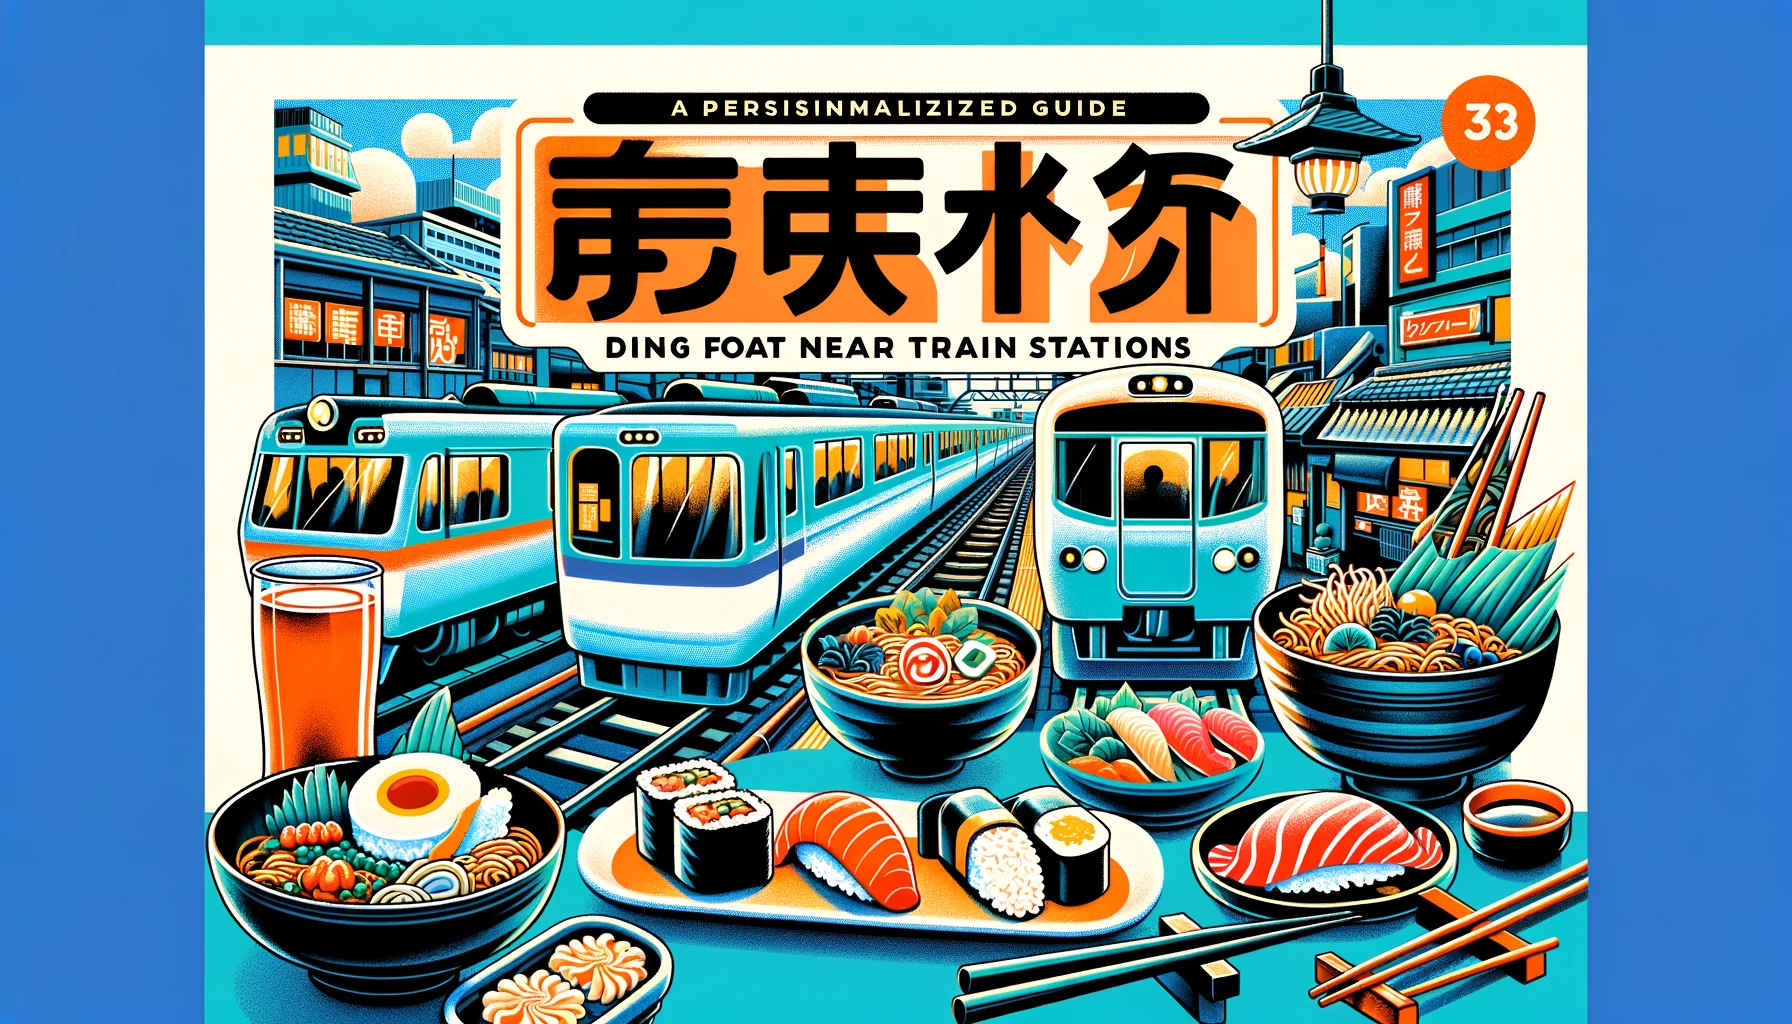 美味探訪 - 日本の駅近くの食事ガイド